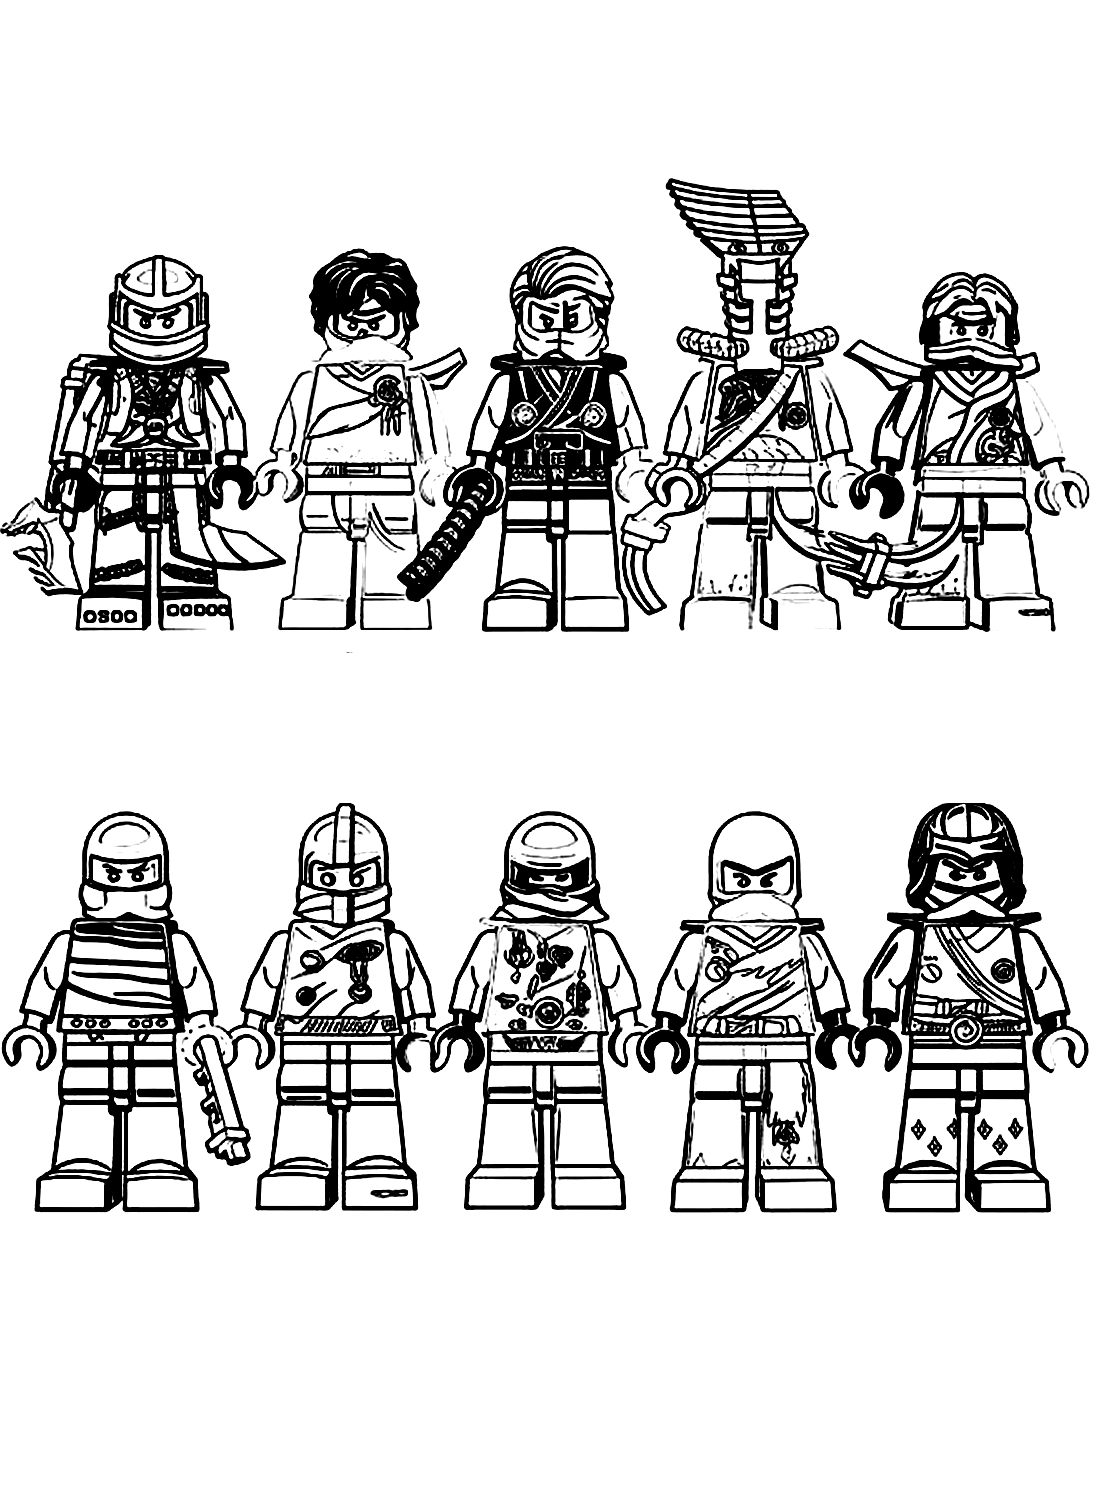 Team of Ninjago Sheet